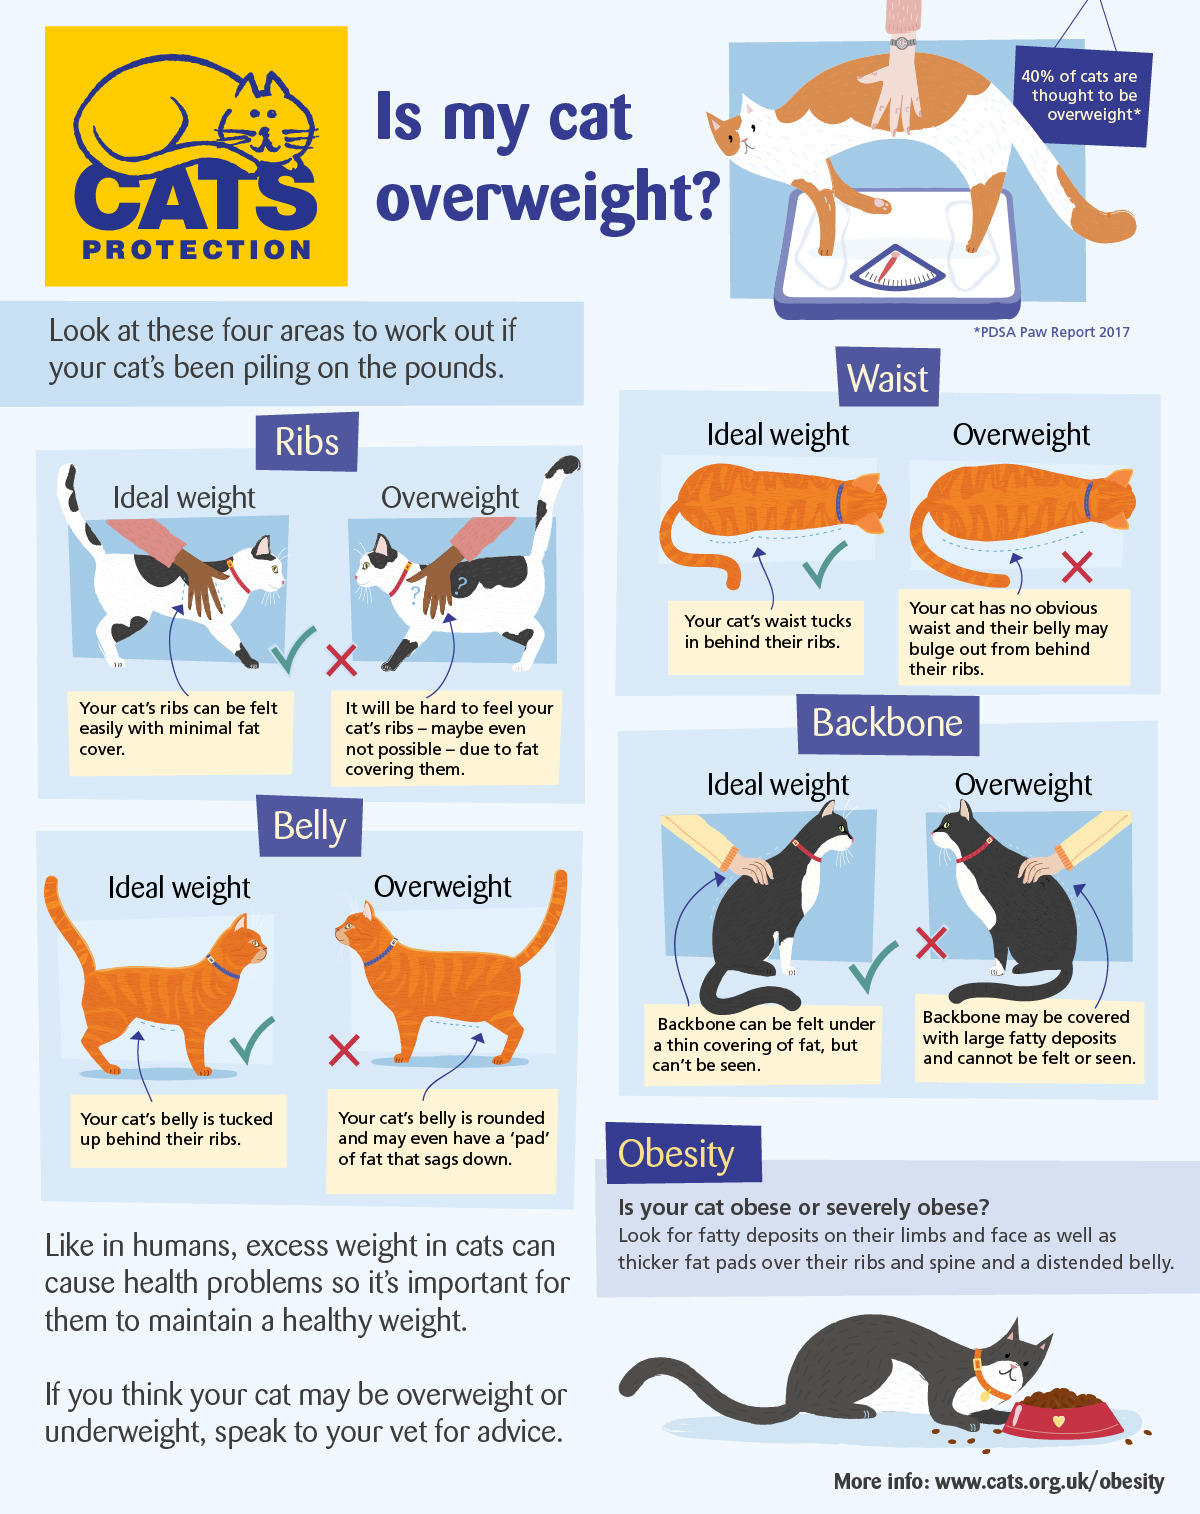 Cat Weight Chart